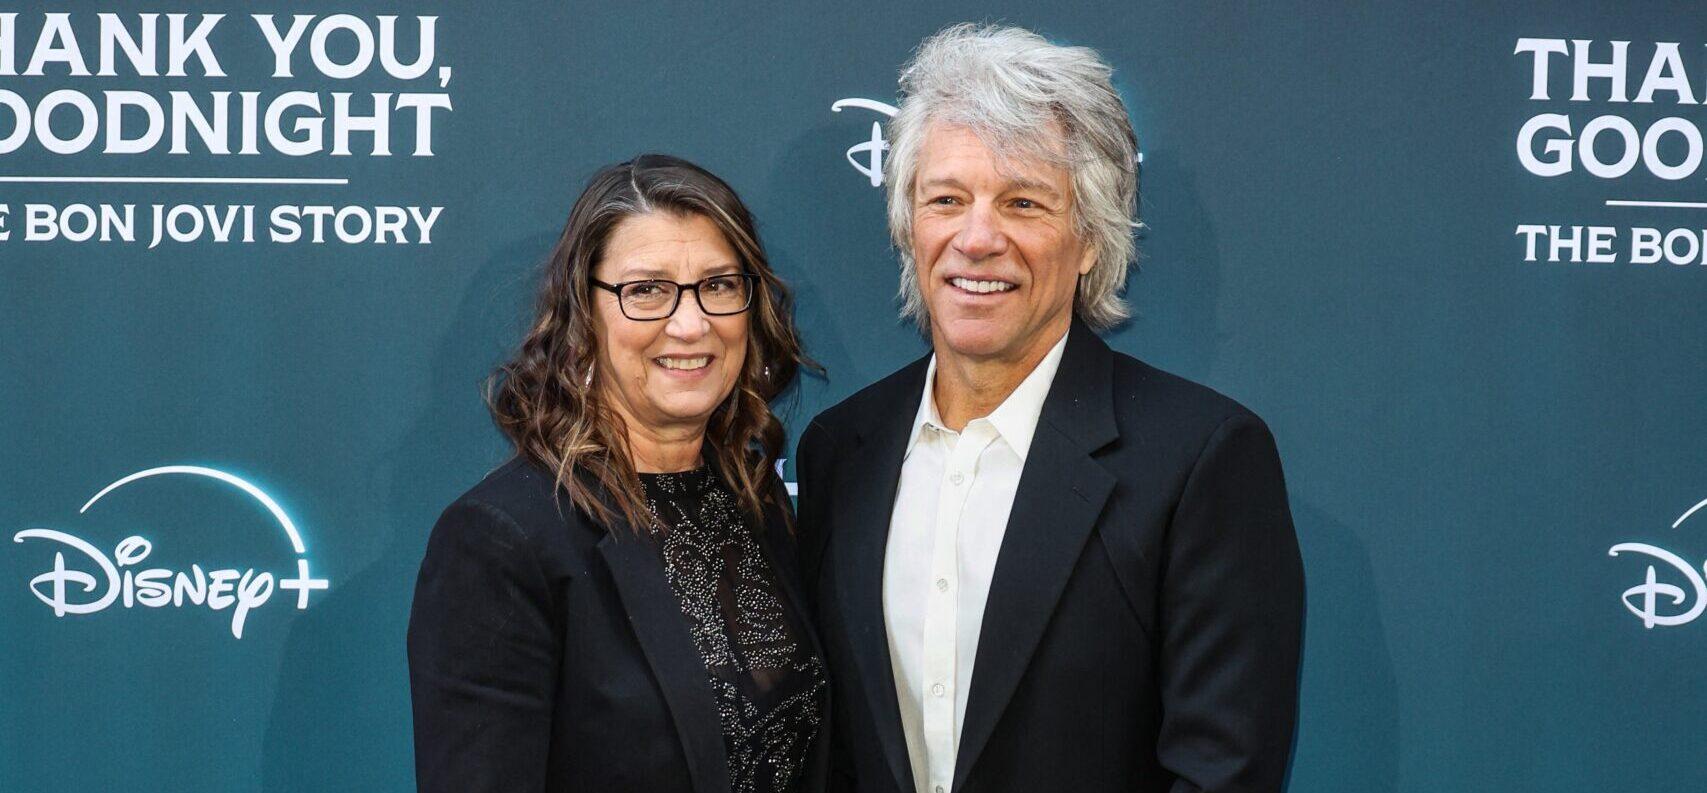 Jon Bon Jovi and Dorothea Hurley pose